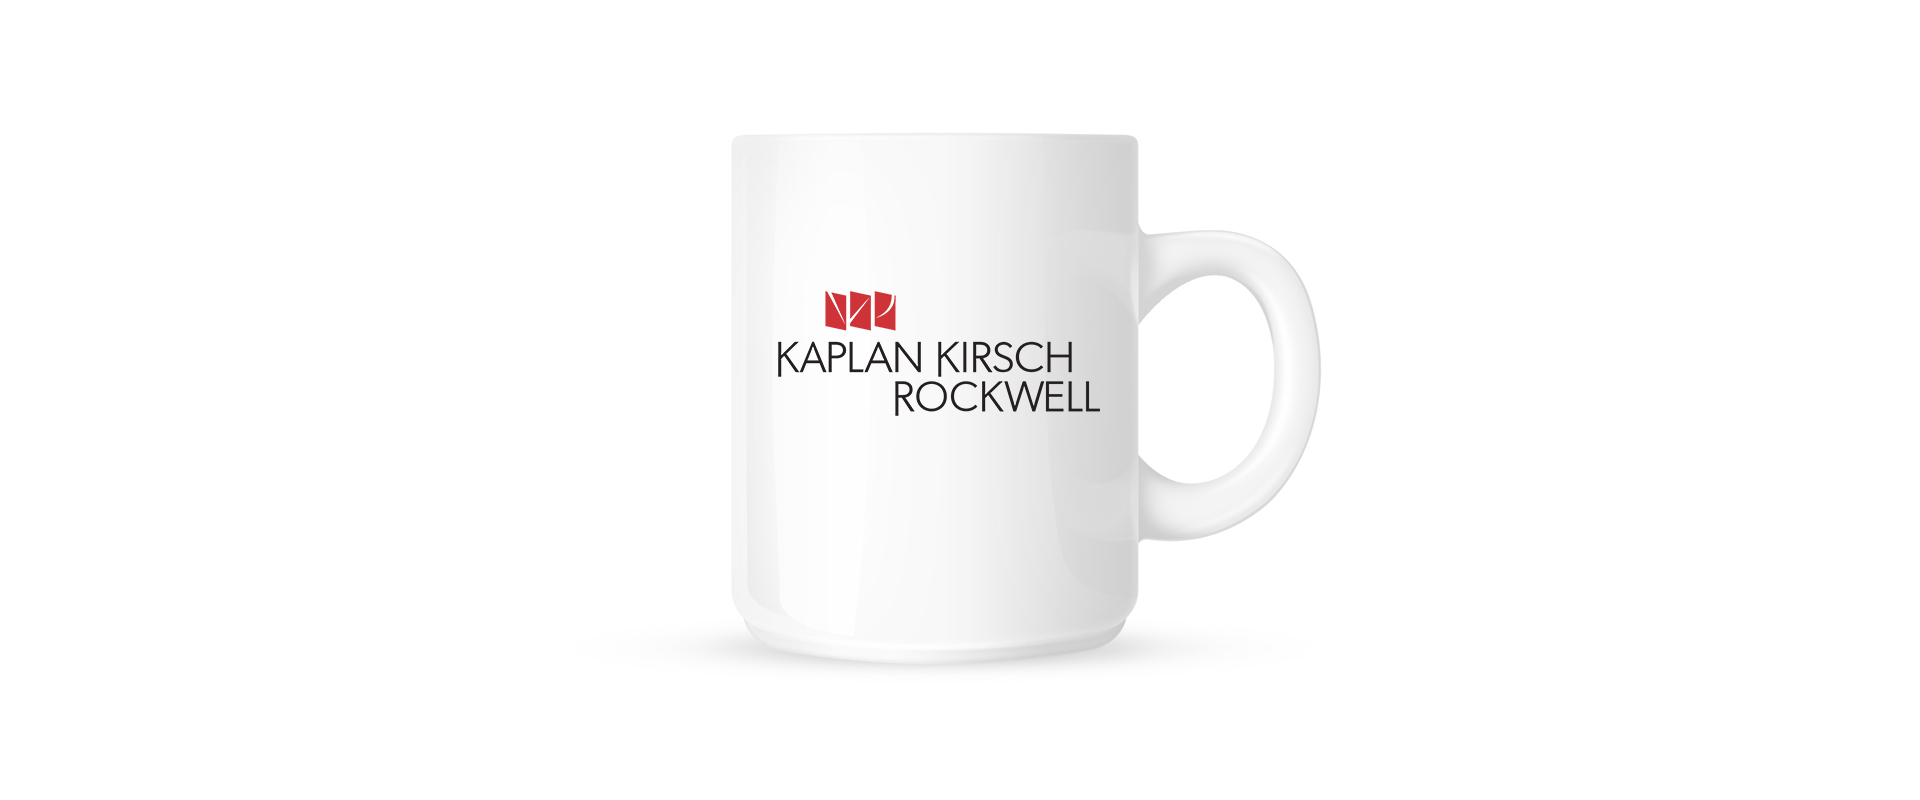 Kaplan Kirsch Rockwell Logo on Mug